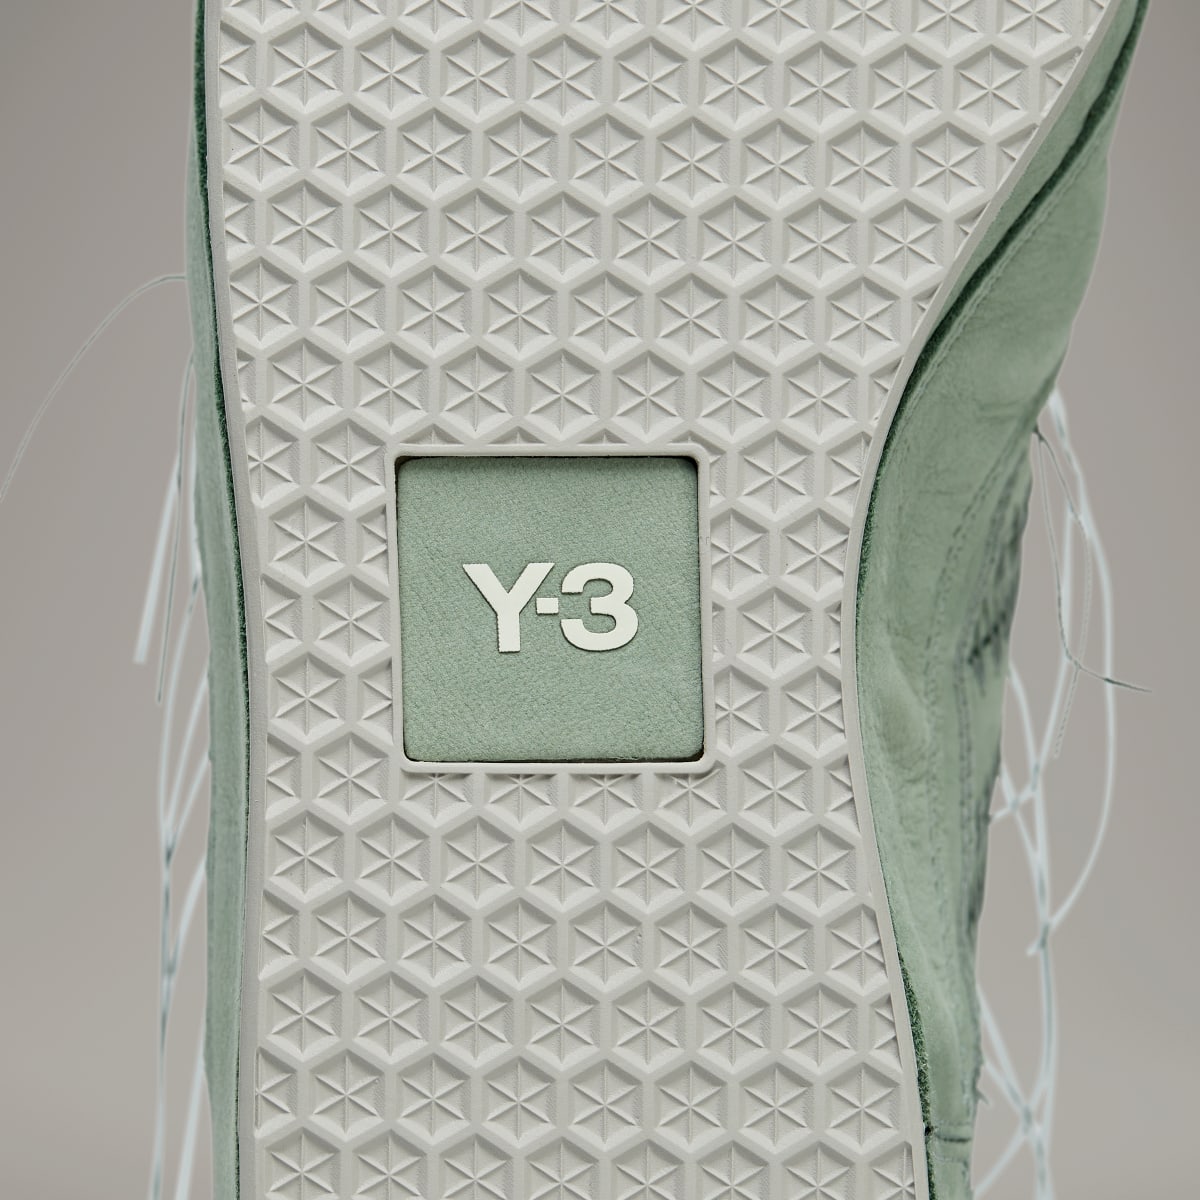 Adidas Gazelle Y-3. 11